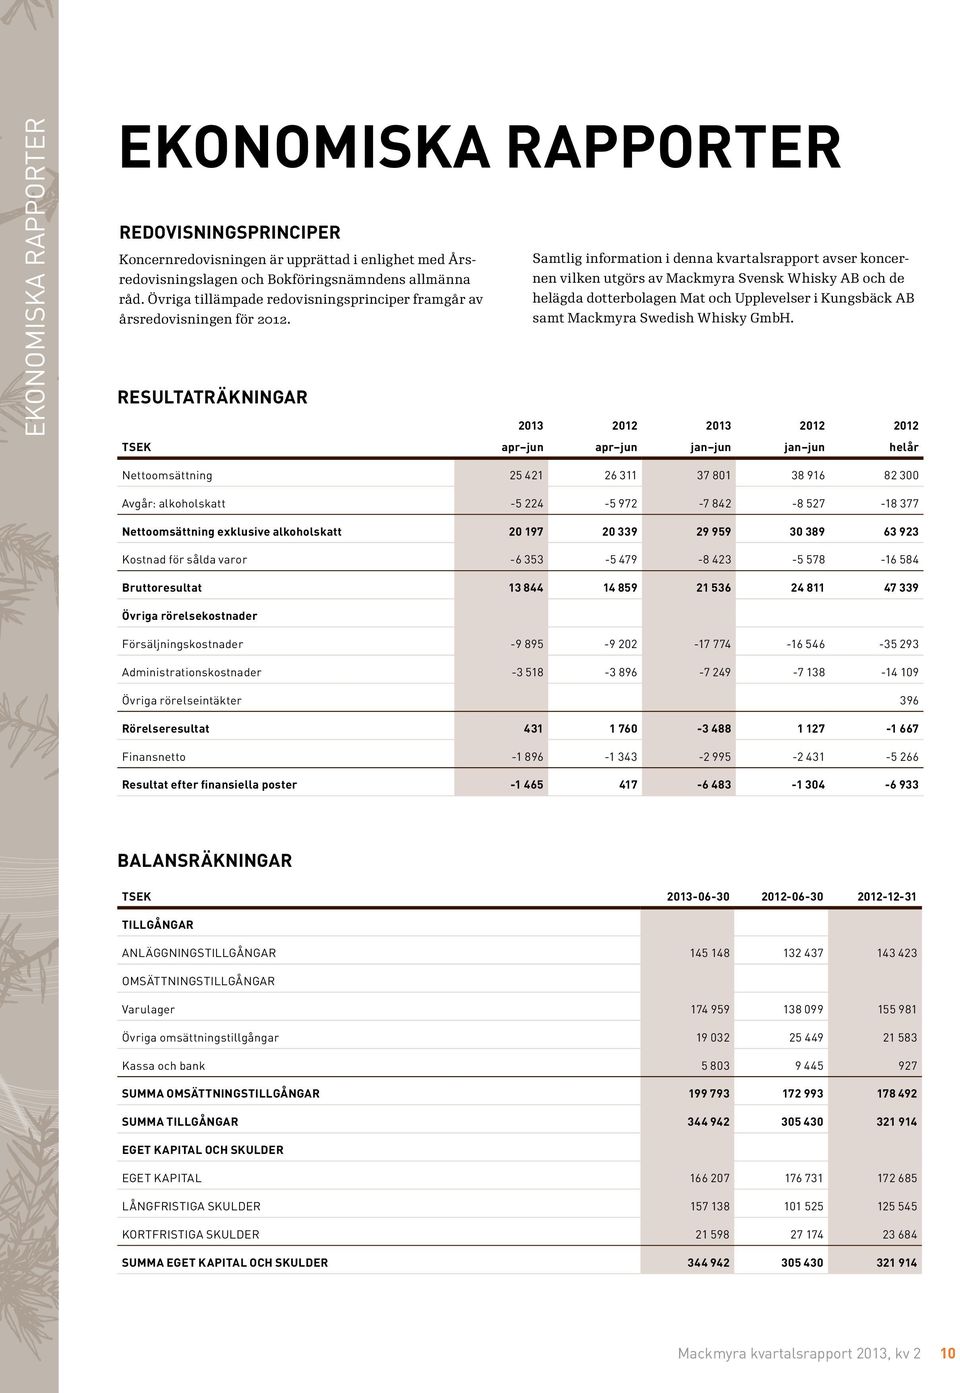 Samtlig information i denna kvartalsrapport avser koncernen vilken utgörs av Mackmyra Svensk Whisky AB och de helägda dotterbolagen Mat och Upplevelser i Kungsbäck AB samt Mackmyra Swedish Whisky